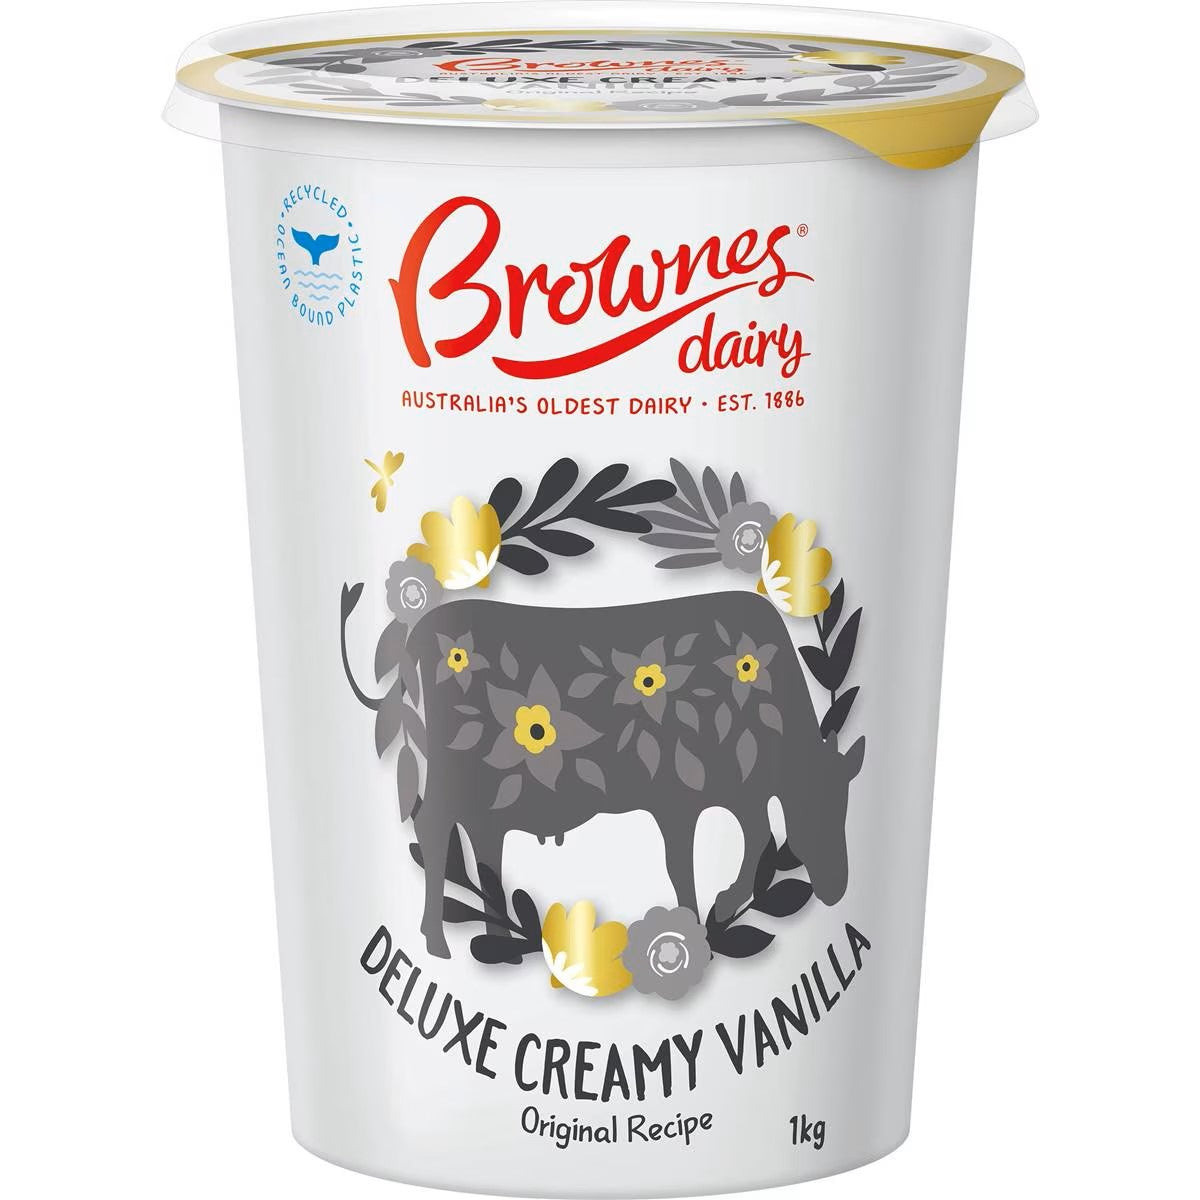 Brownes Deluxe Creamy Vanilla Yoghurt 1kg